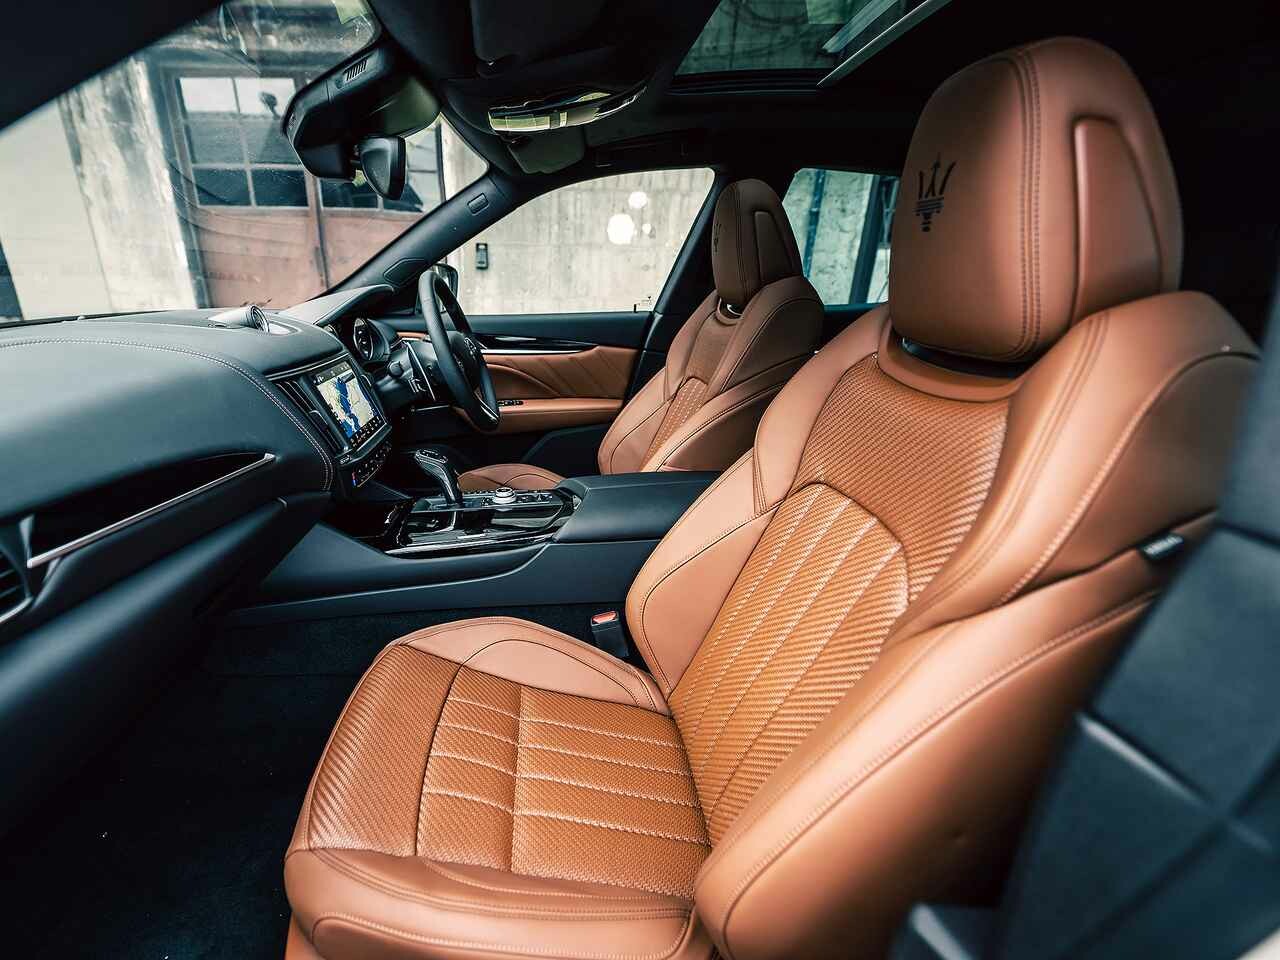 マセラティが特別限定車「ペッレ イントレッチァータ」を発売。座り心地と質感をグレードアップする、編み込みレザーをシートに採用。